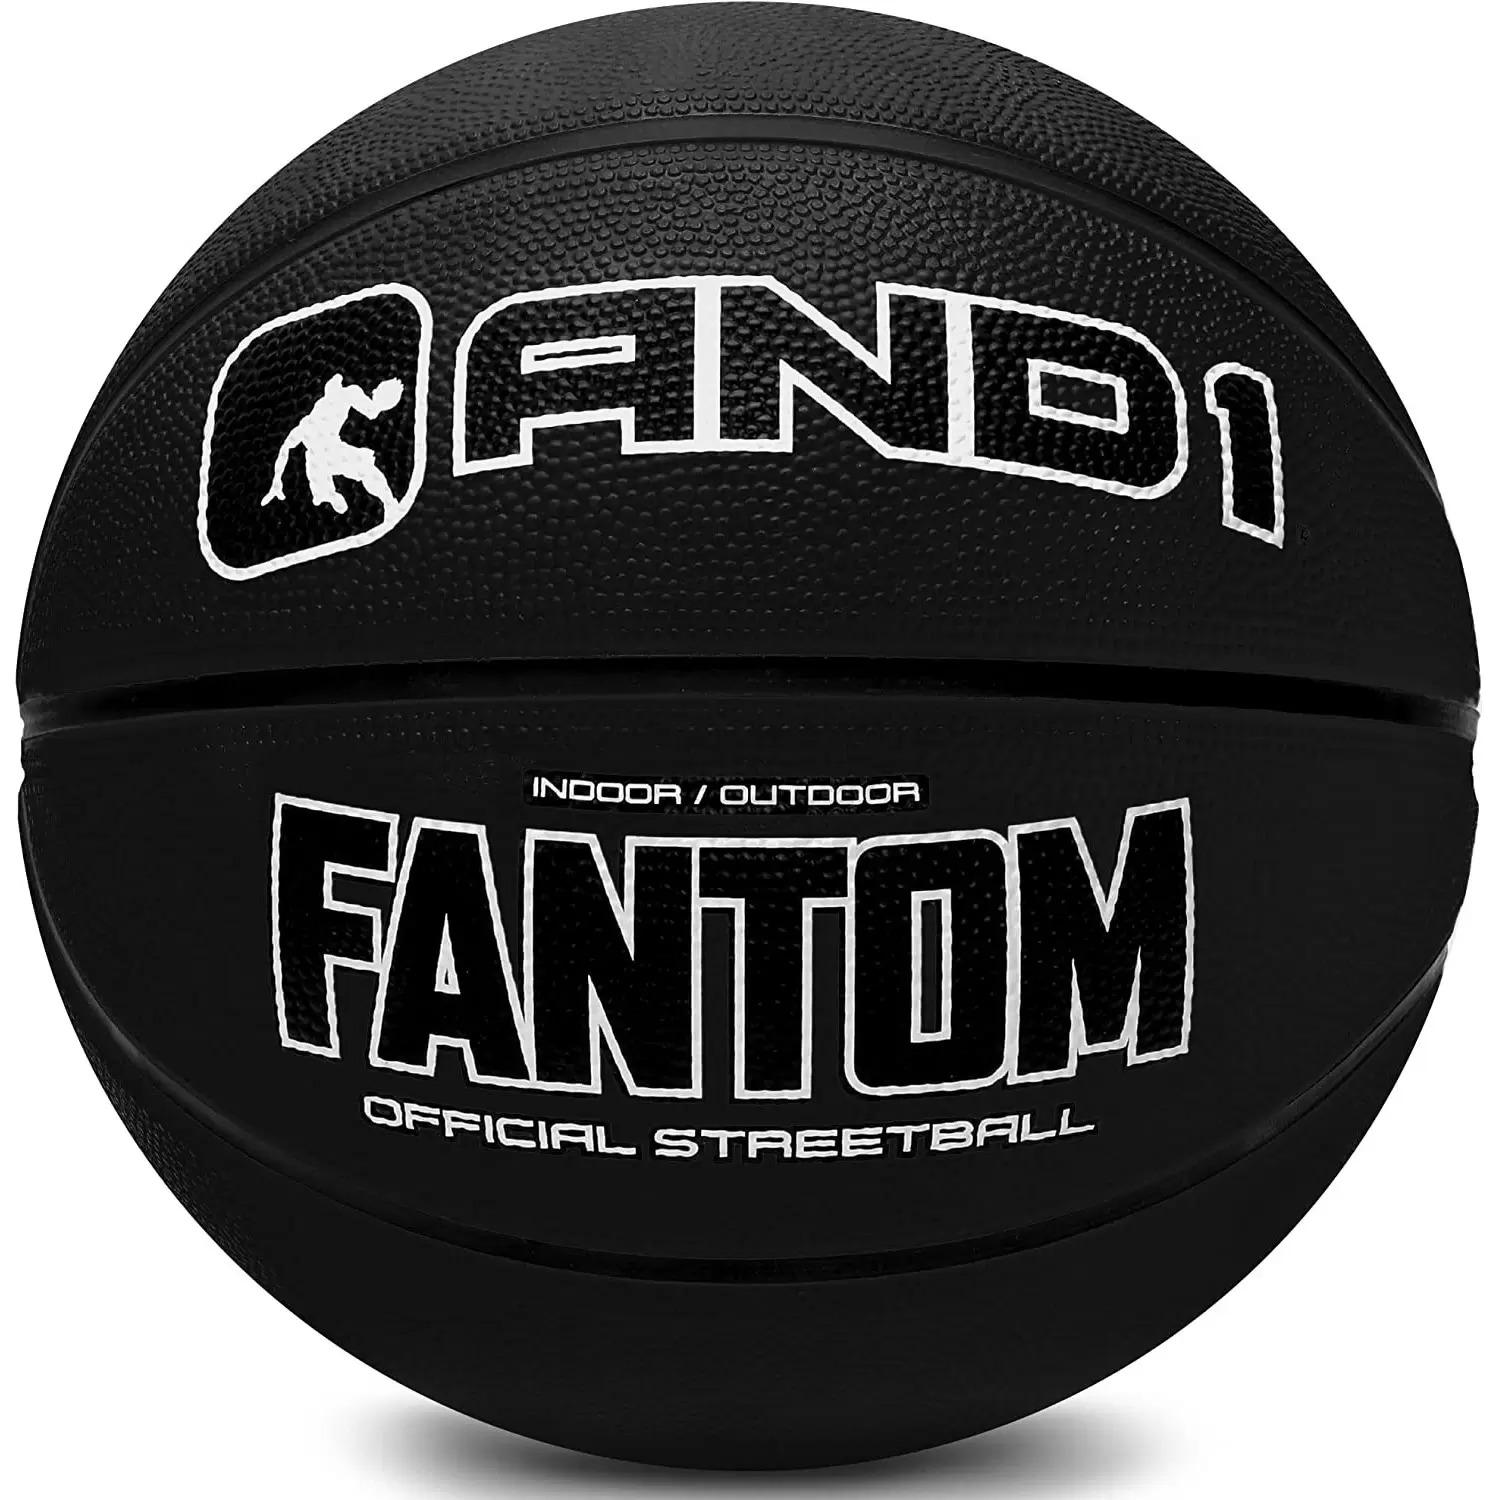 AND1 Fantom Rubber Street Basketball for $5